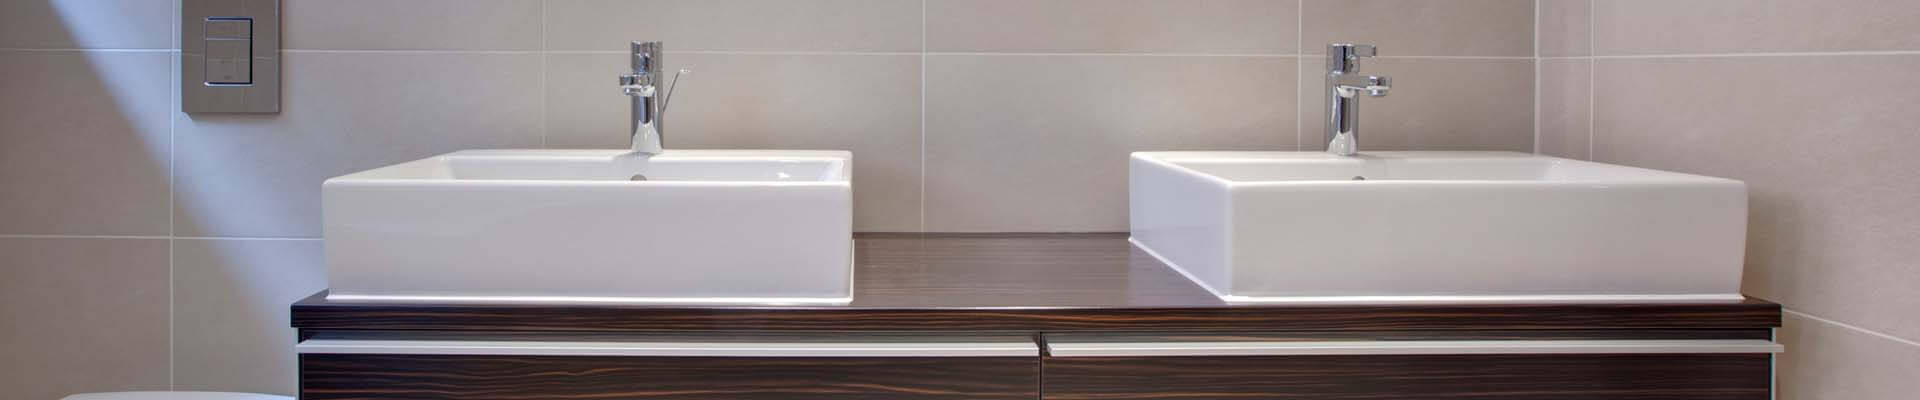 Villeroy Und Boch Waschbecken
 Villeroy und Boch Waschbecken günstig online kaufen